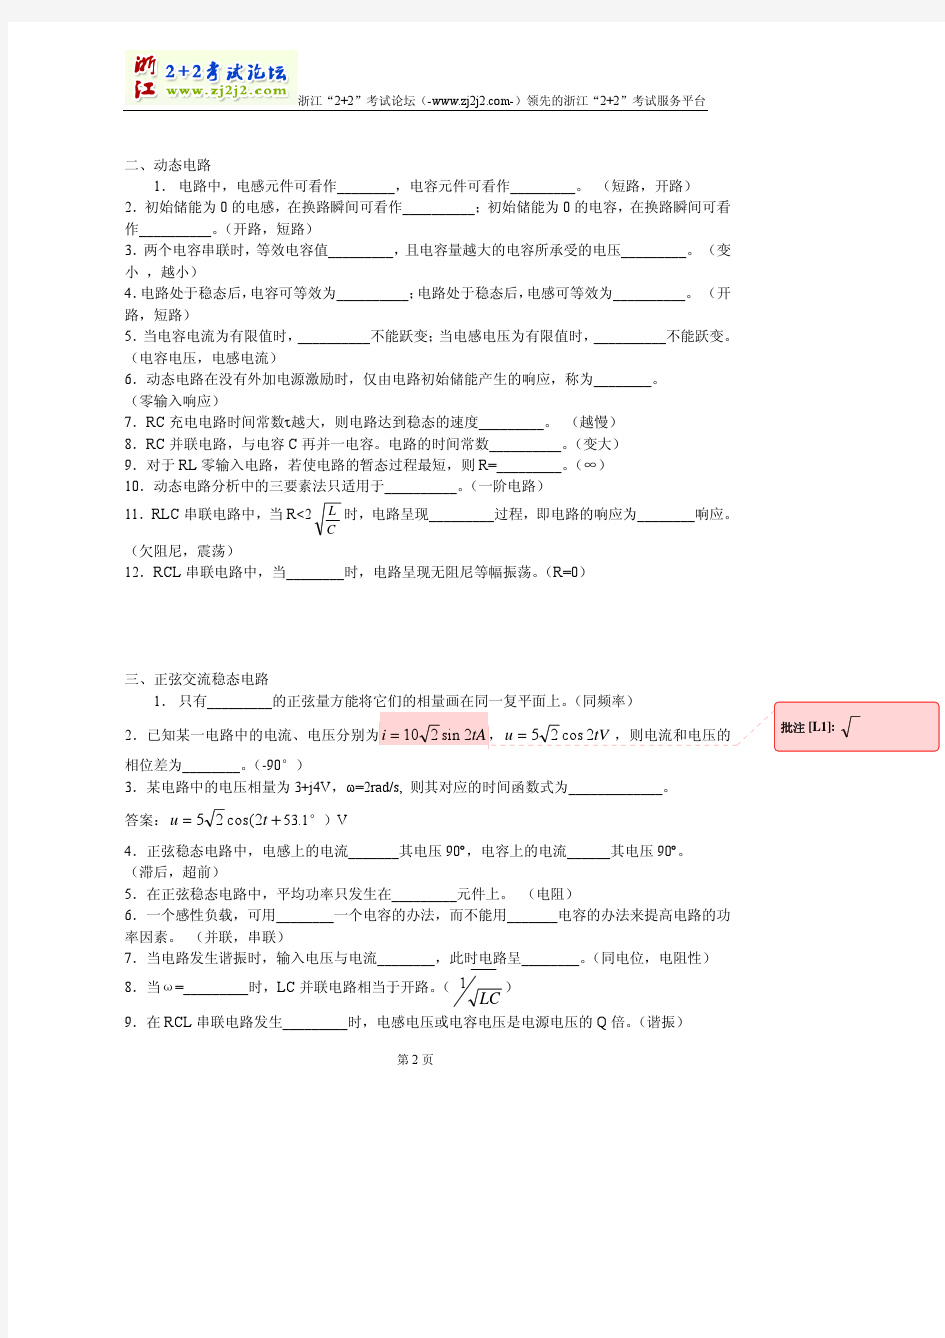 杭州电子科技大学《电路分析》习题库